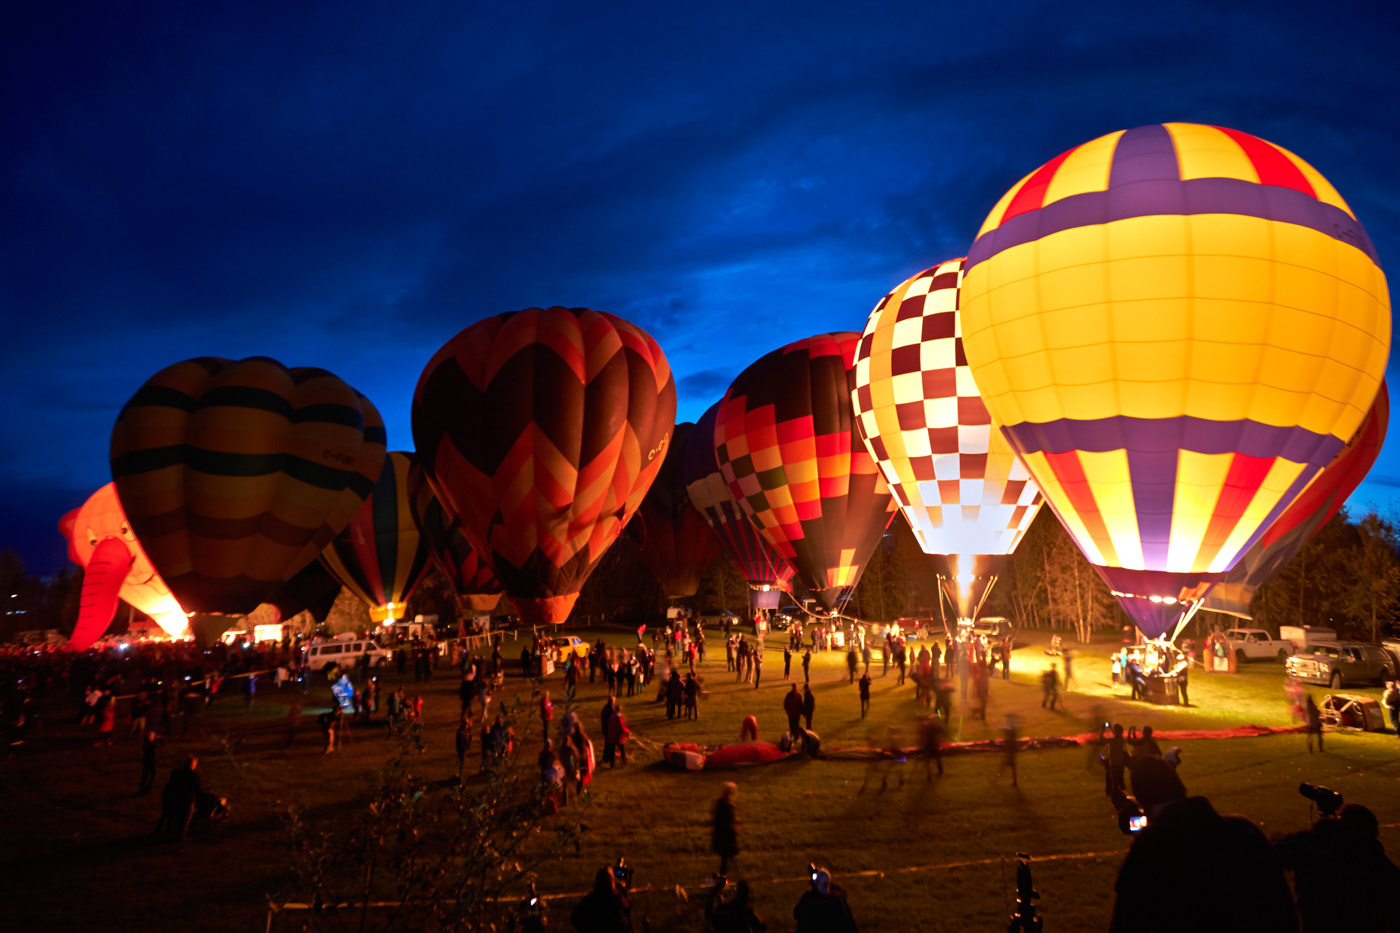 High River Hot Air Balloon Festival